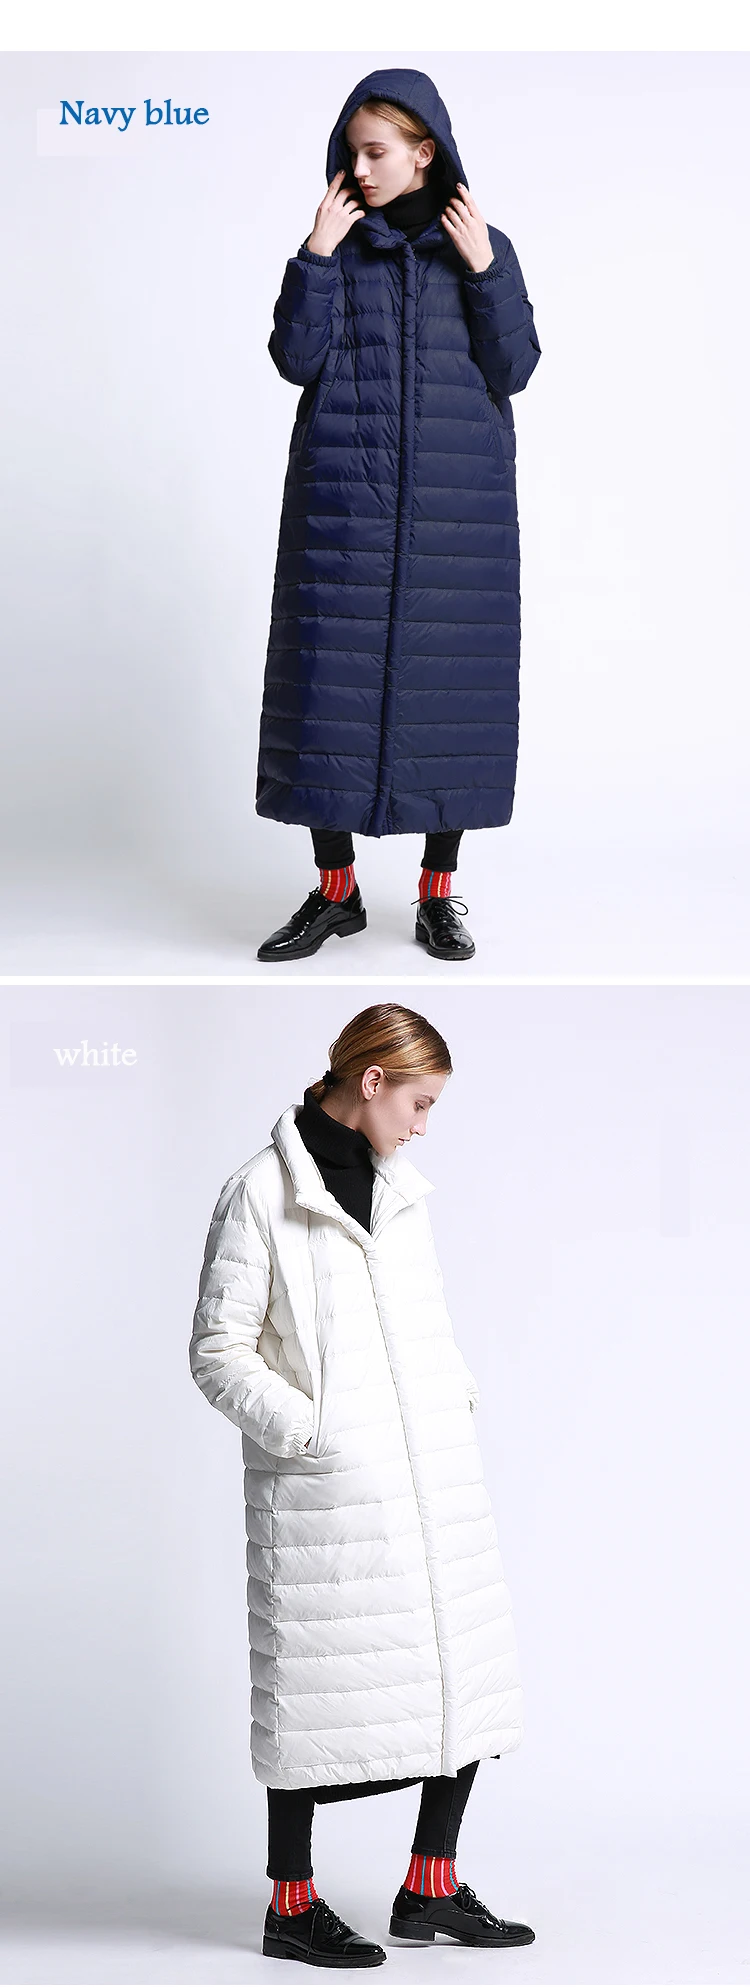 Европейский Модный минималистичный стиль, утолщенная зимняя куртка-пуховик, парка с капюшоном, теплое пальто большого размера, свободная верхняя одежда